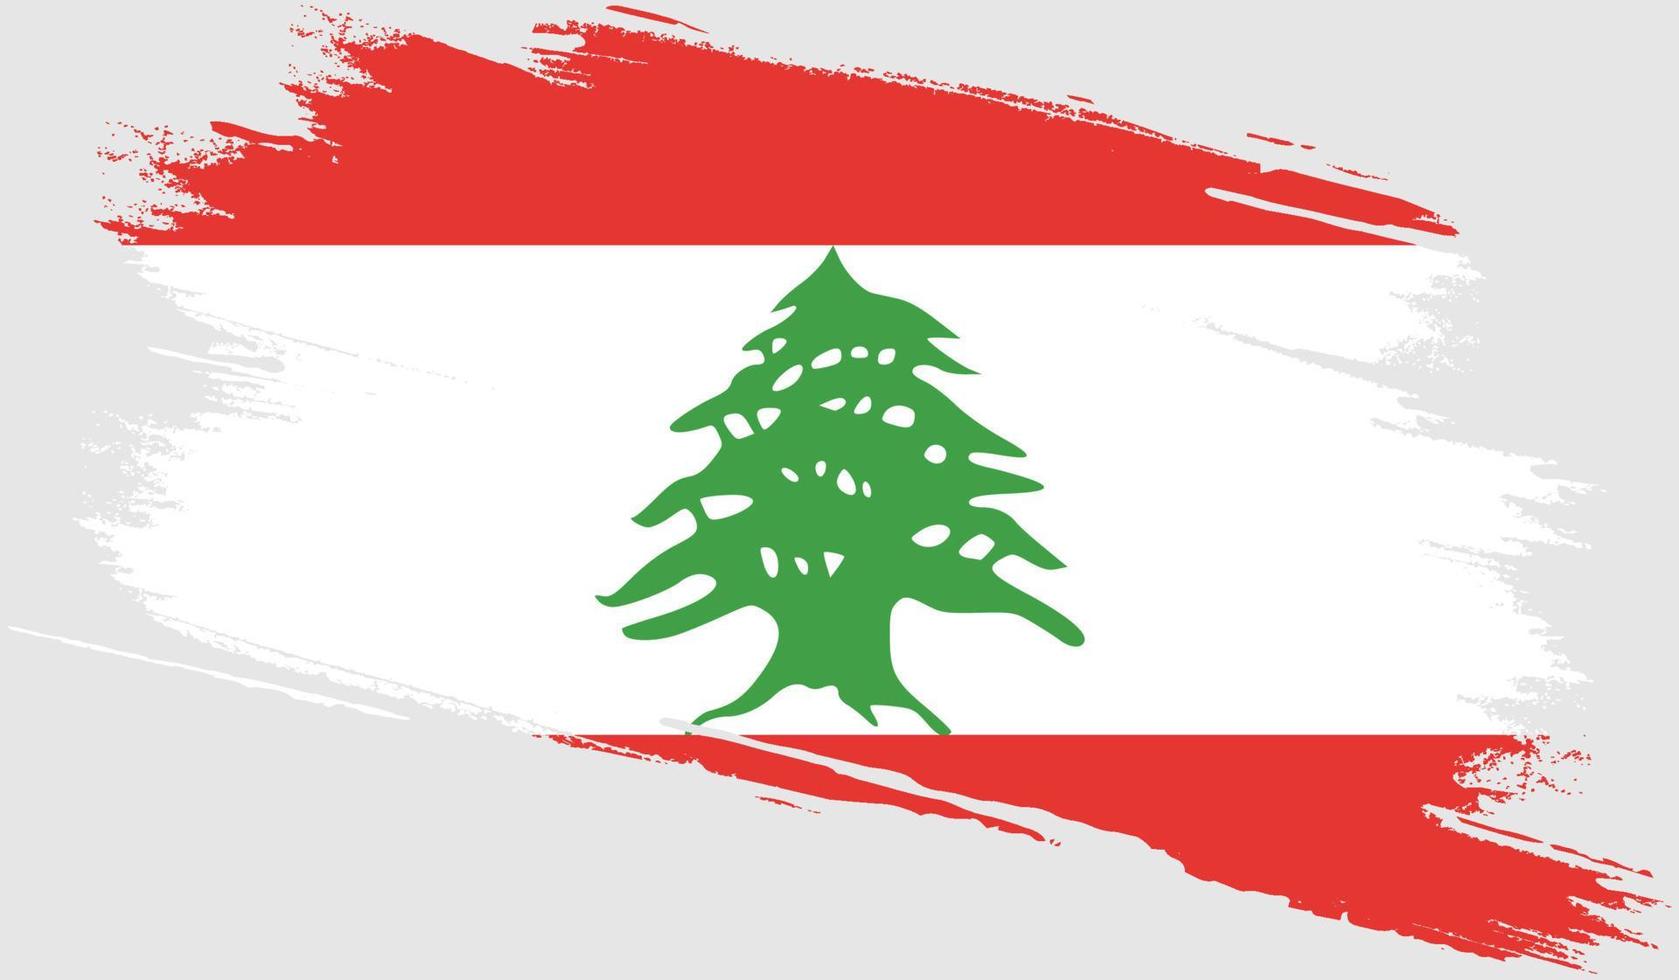 bandiera del Libano con texture grunge vettore